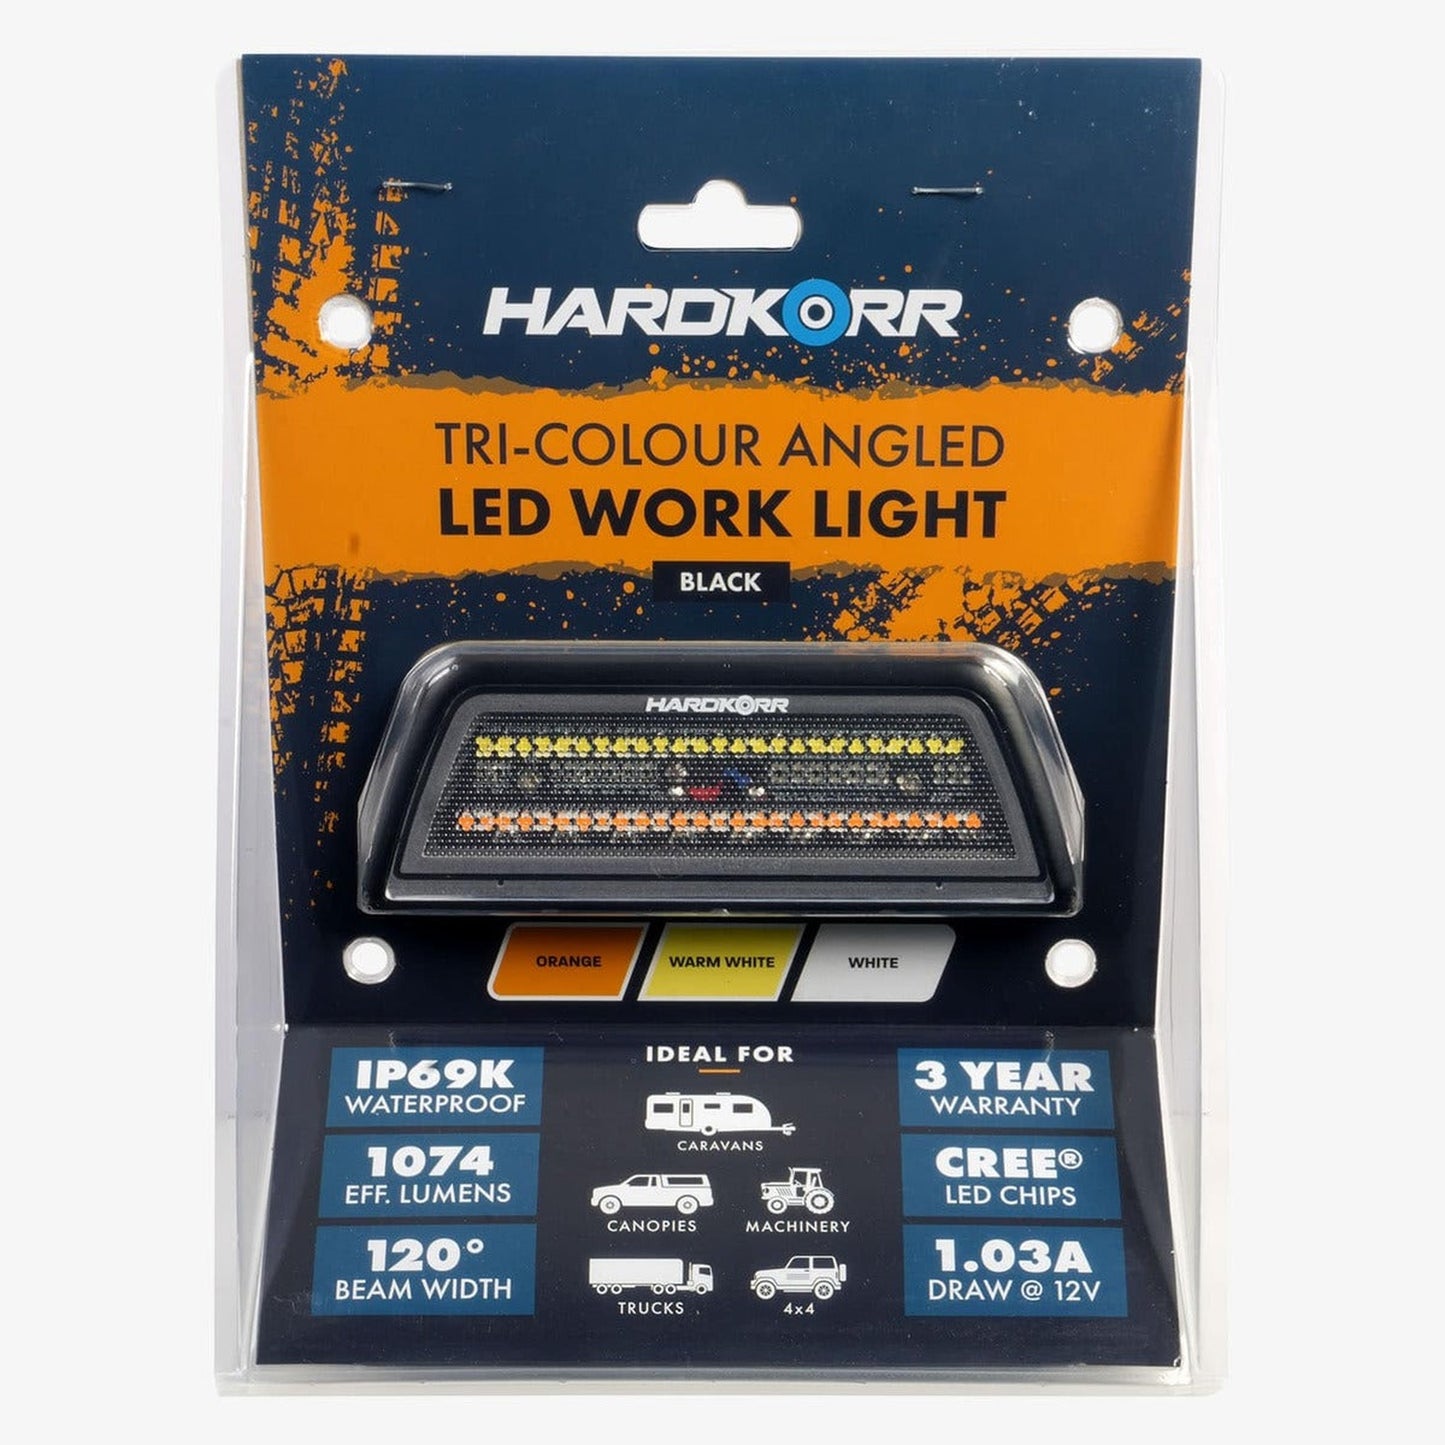 Hard Korr Tri-Colour Angled LED Work Light - WHITE